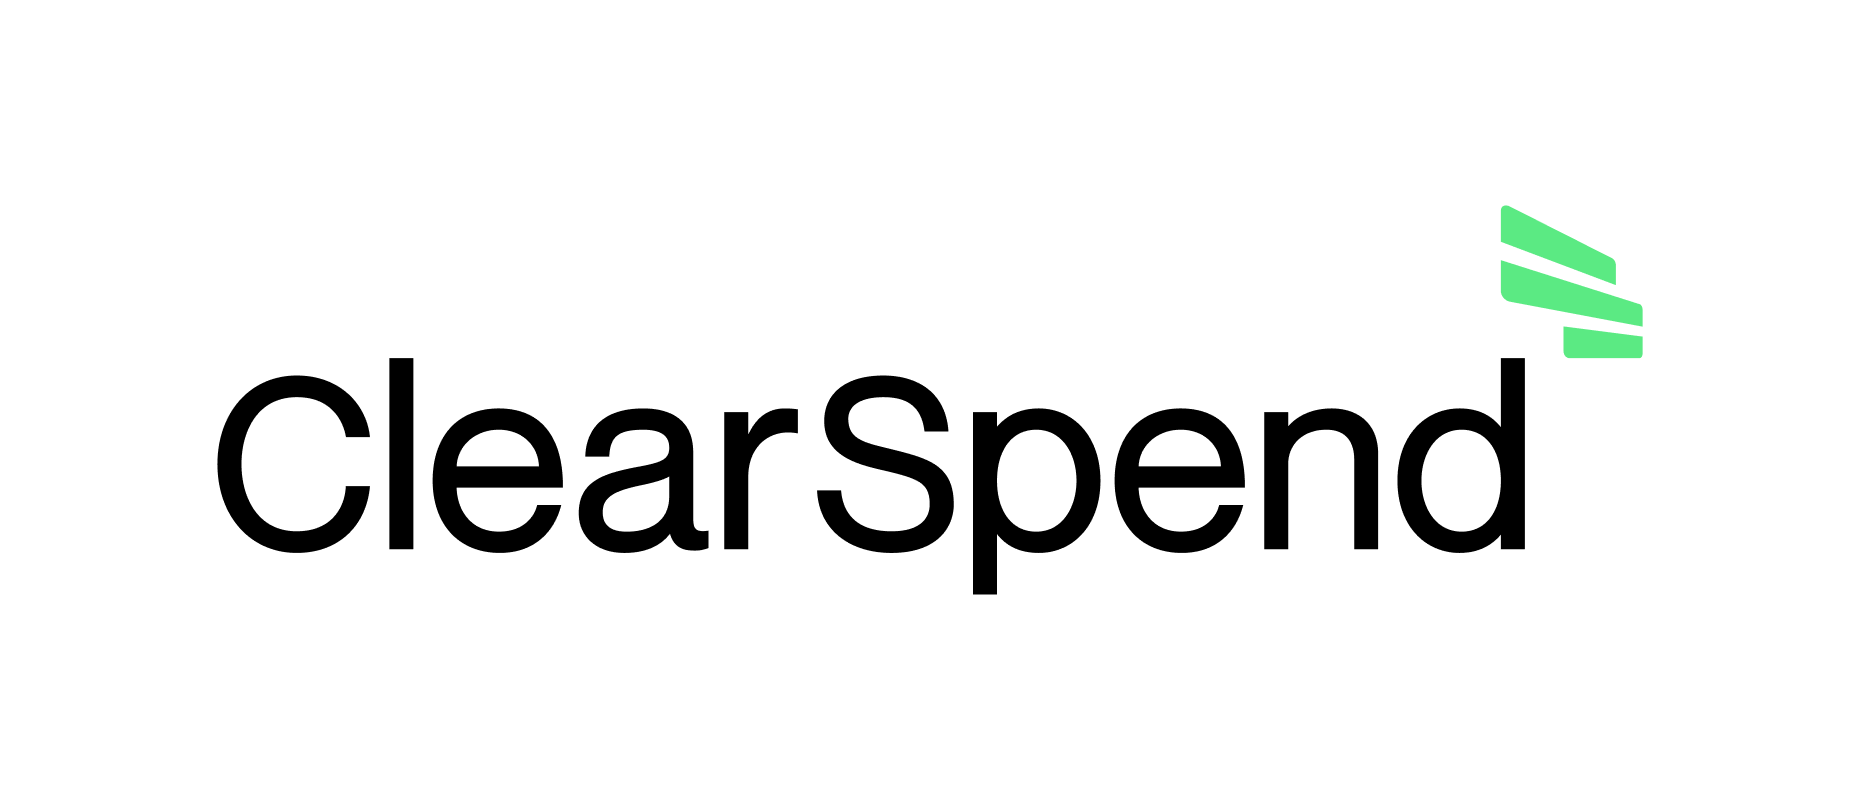 Uqudo company logo